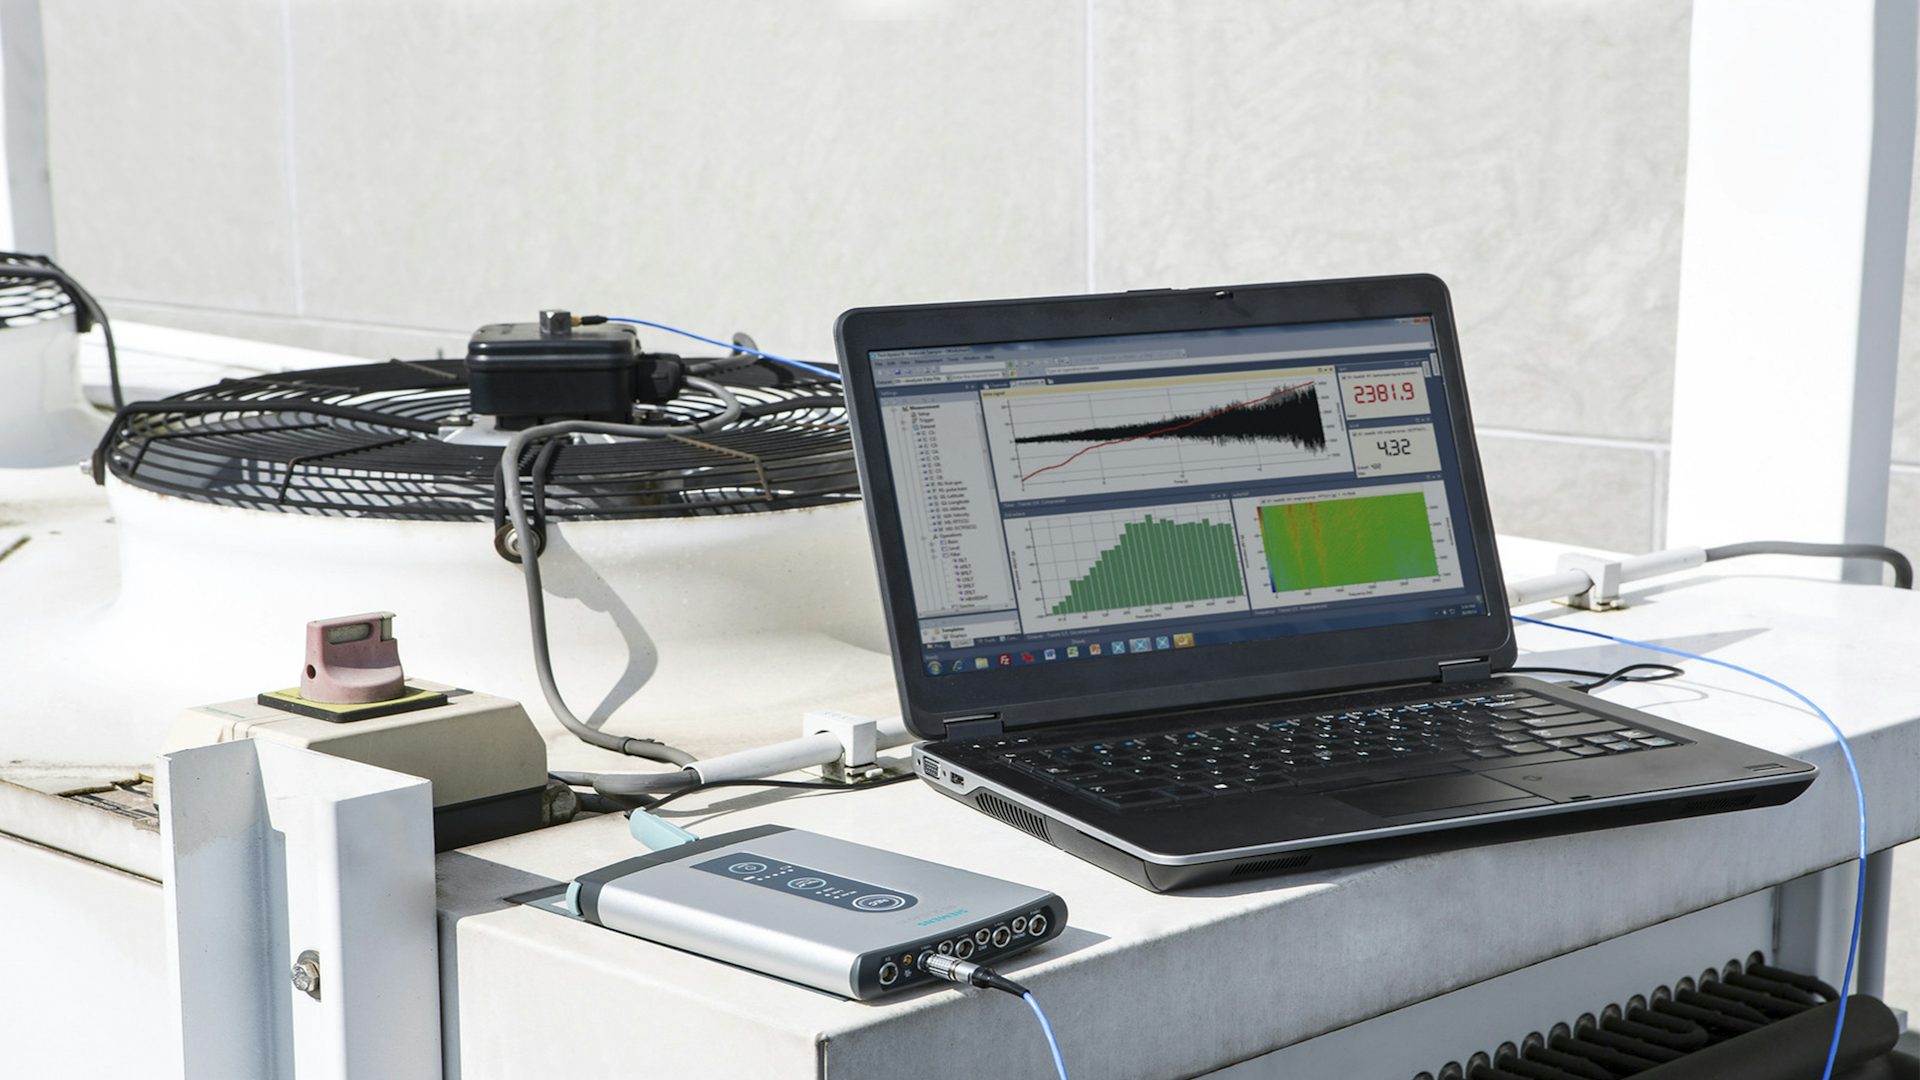 Provádění testu zvukových vibrací na notebooku se softwarem Simcenter Testlab a hardwarovým zařízením Simcenter SCADAS